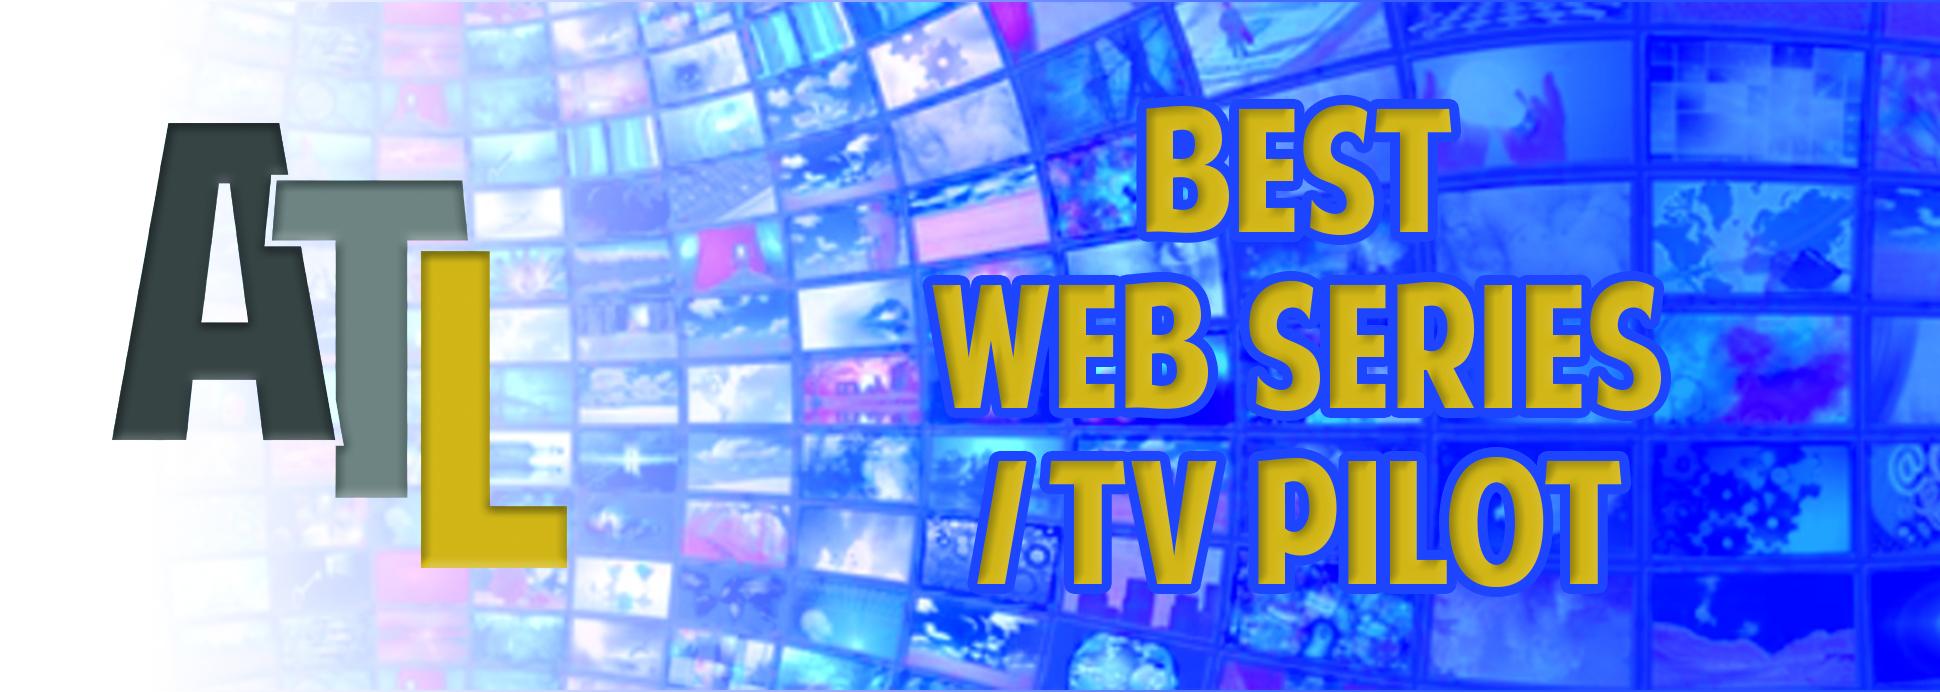 Best WebSeries/TV Pilot